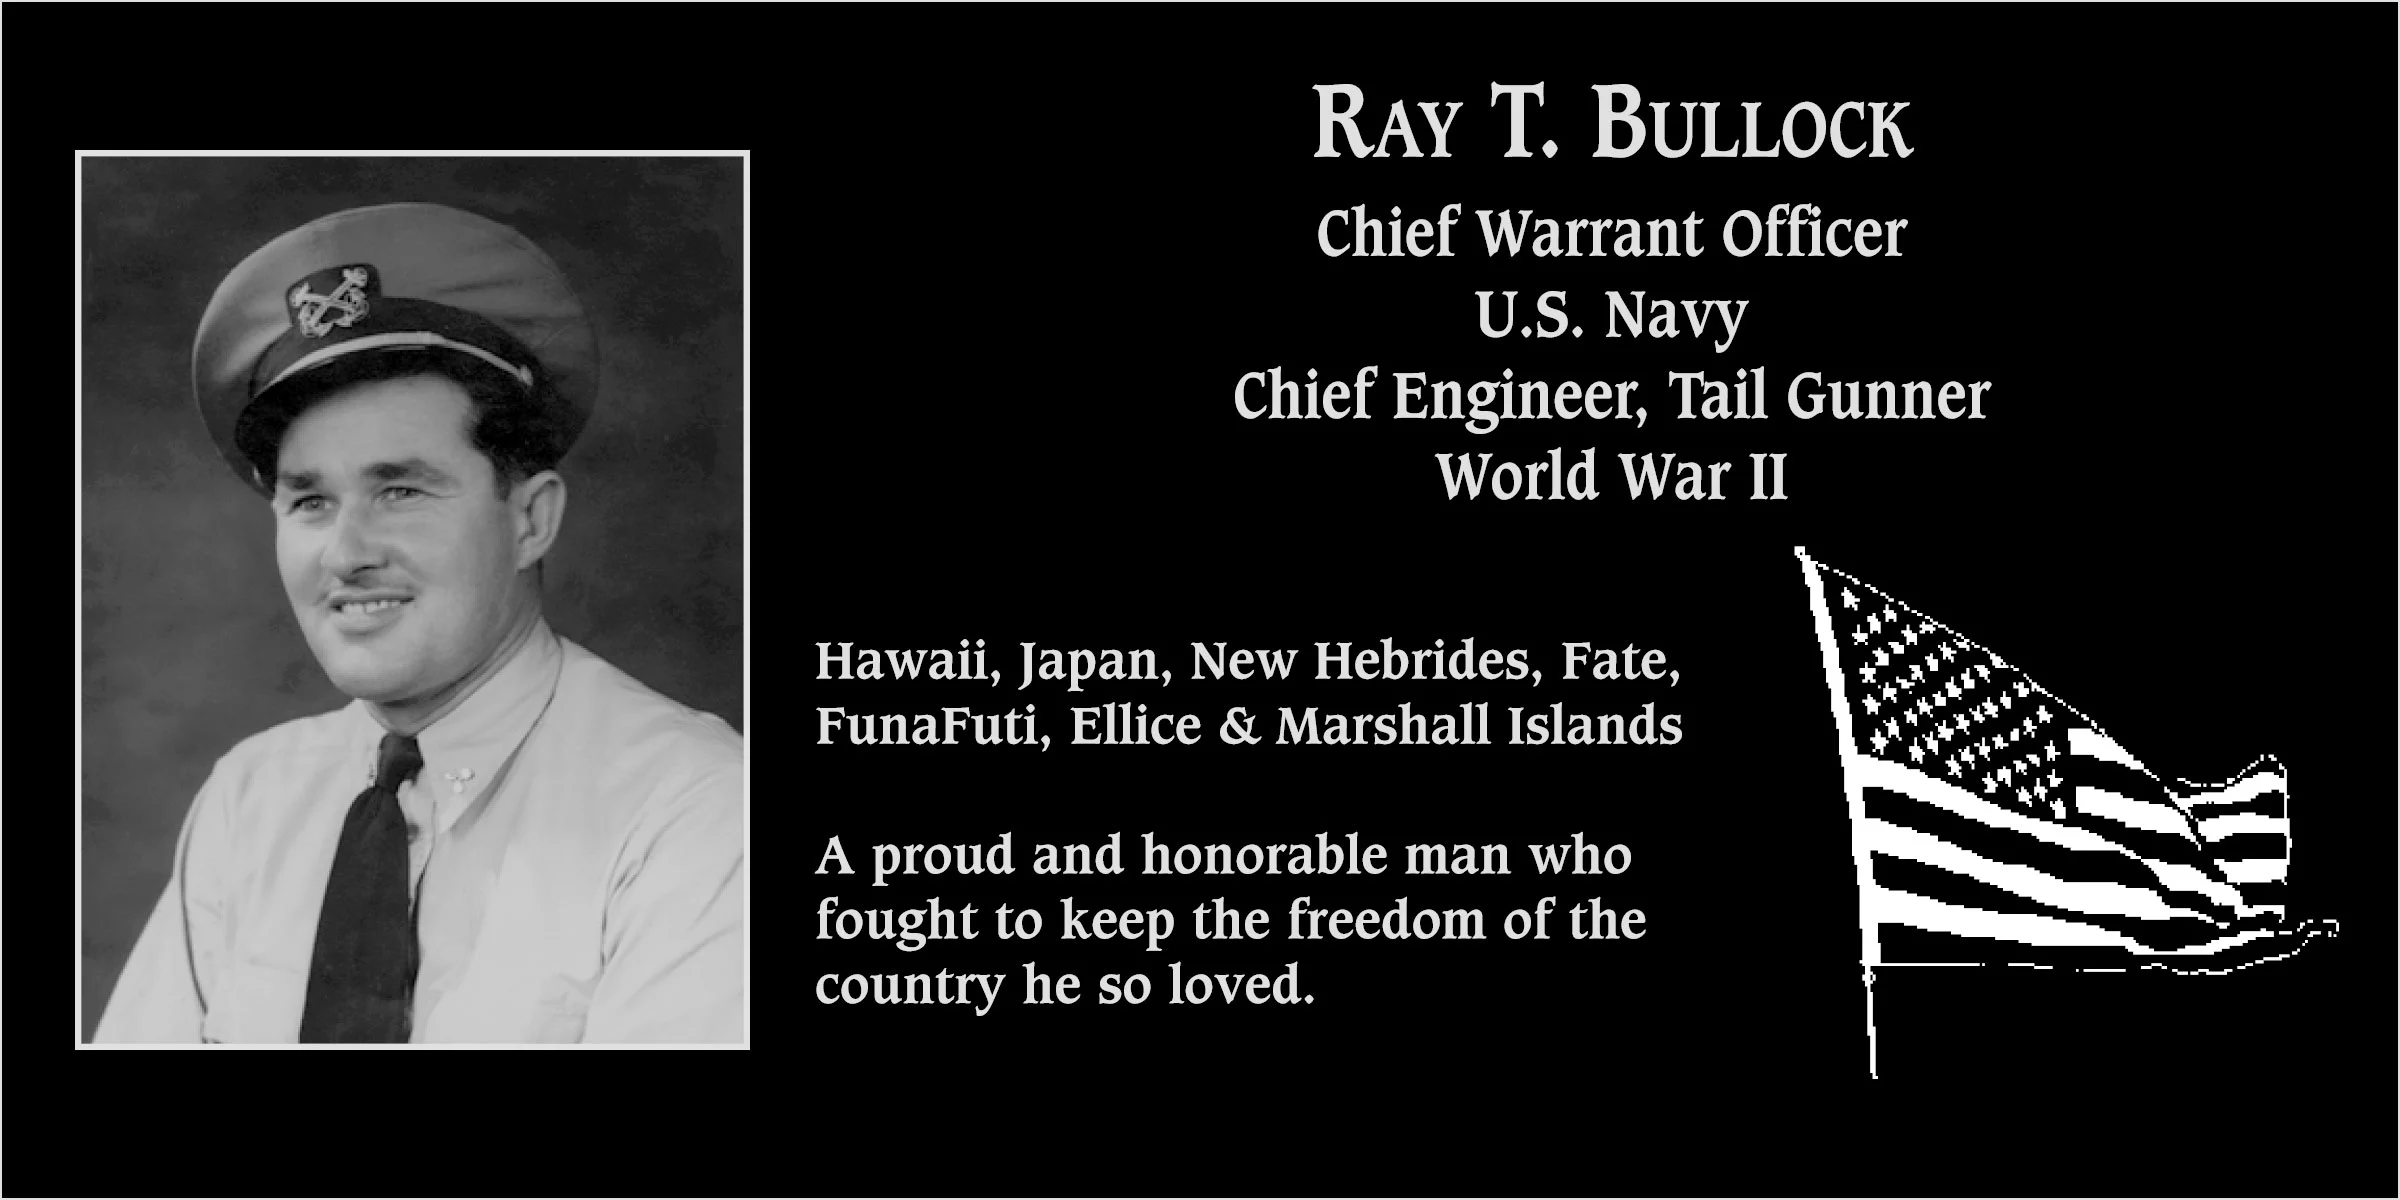 Ray T. Bullock